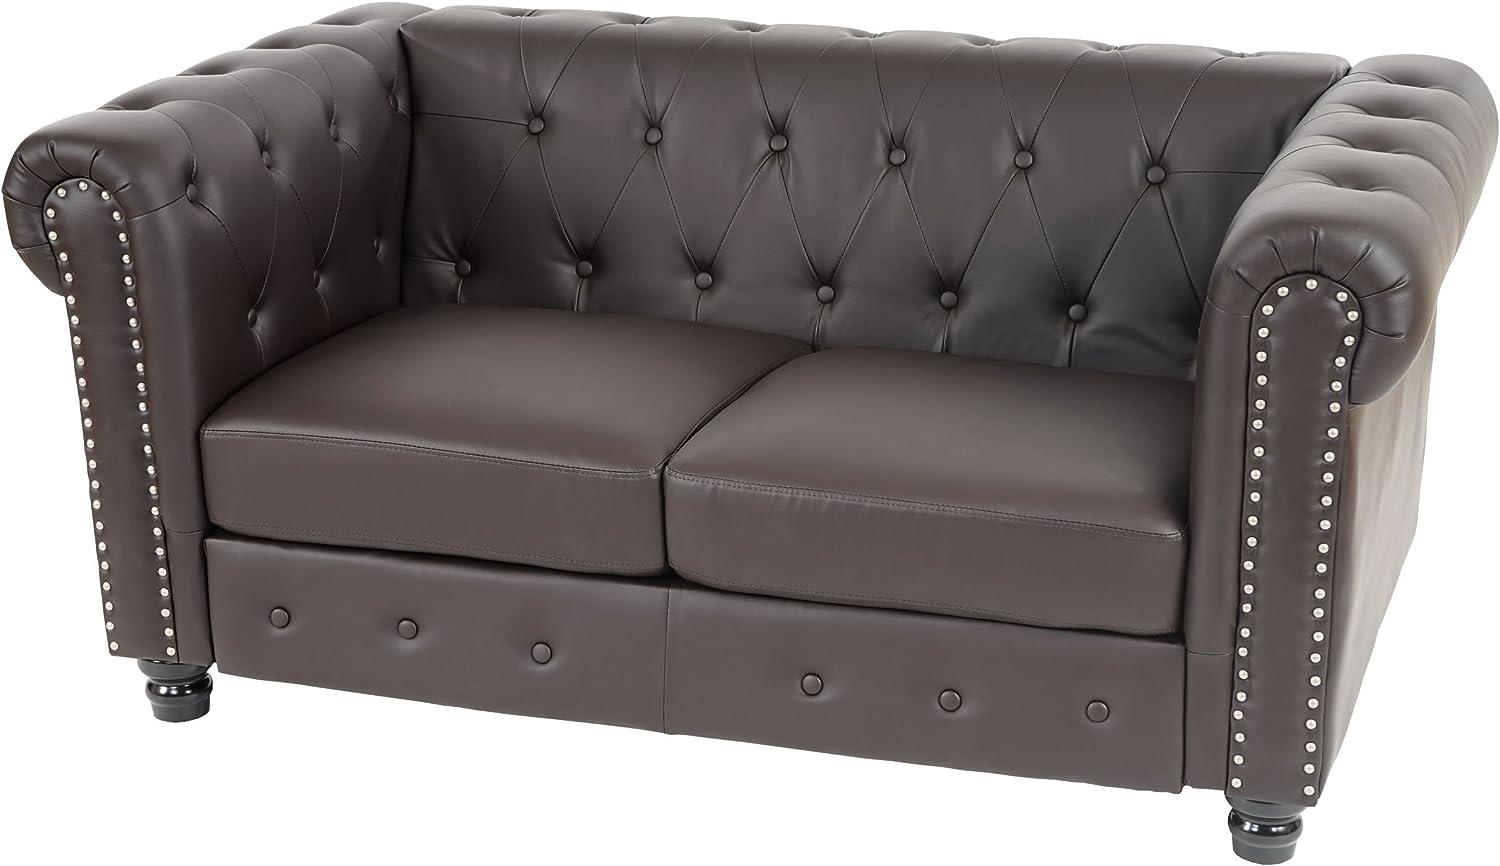 Luxus 2er Sofa Loungesofa Couch Chesterfield Kunstleder 160cm ~ runde Füße, rot-braun Bild 1